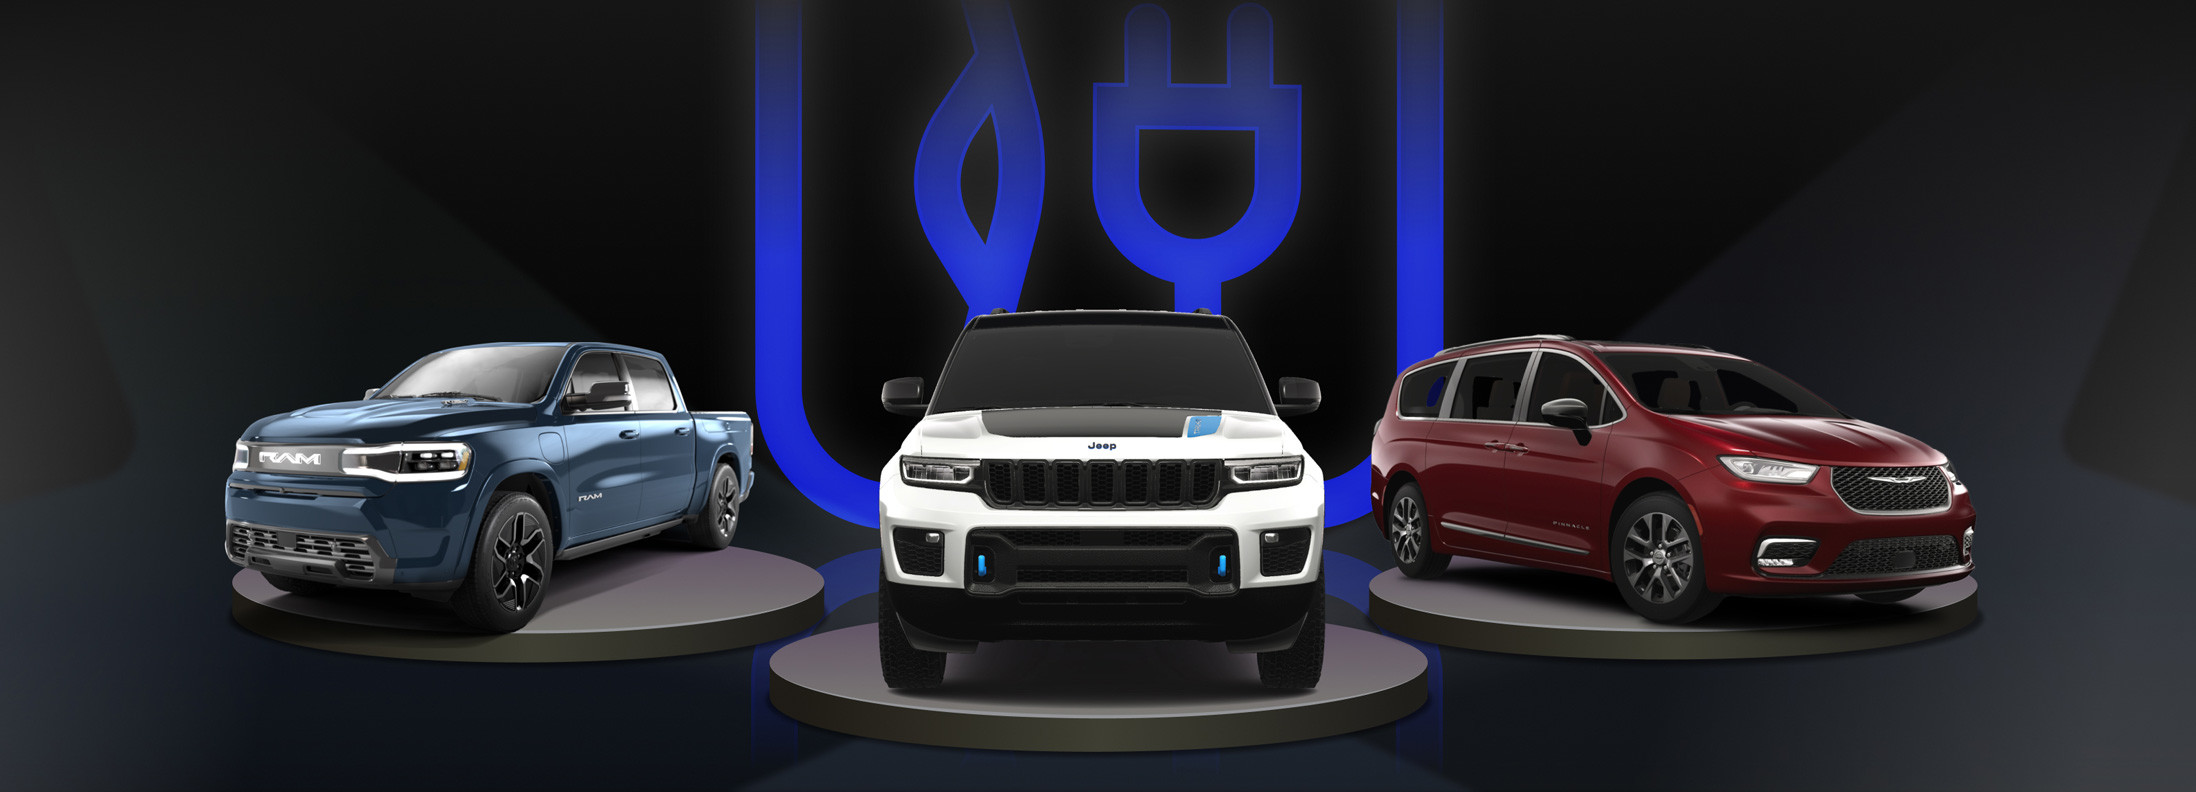 Une bannière avec un Ram 1500 REV, un Jeep Grand Cherokee 4xe et une Chrysler Pacifica Hybrid affichée.